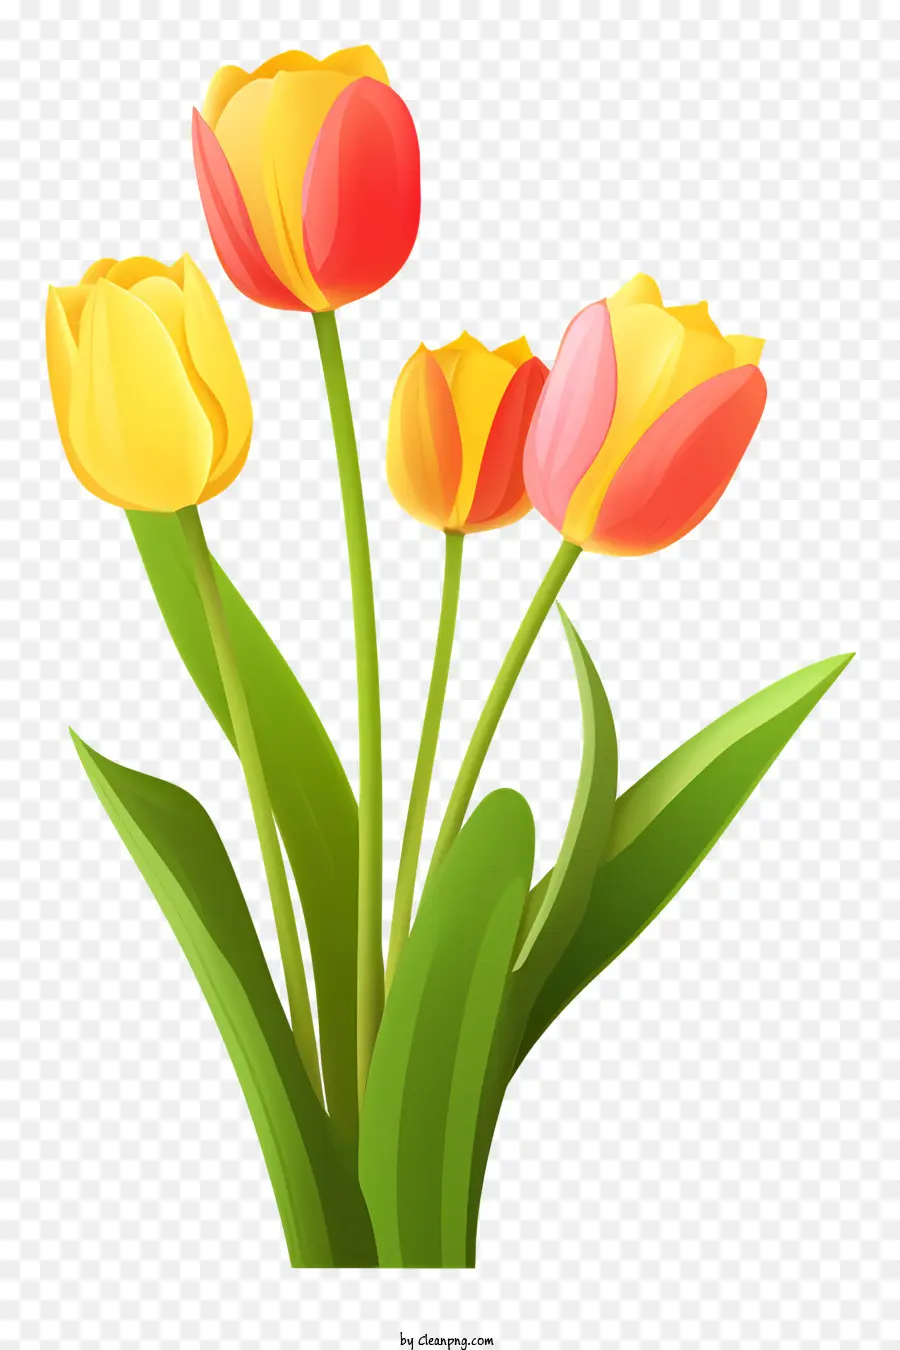 Bouquet hoa tulip màu vàng - Bó hoa tulip với màu vàng, đỏ và xanh lá cây